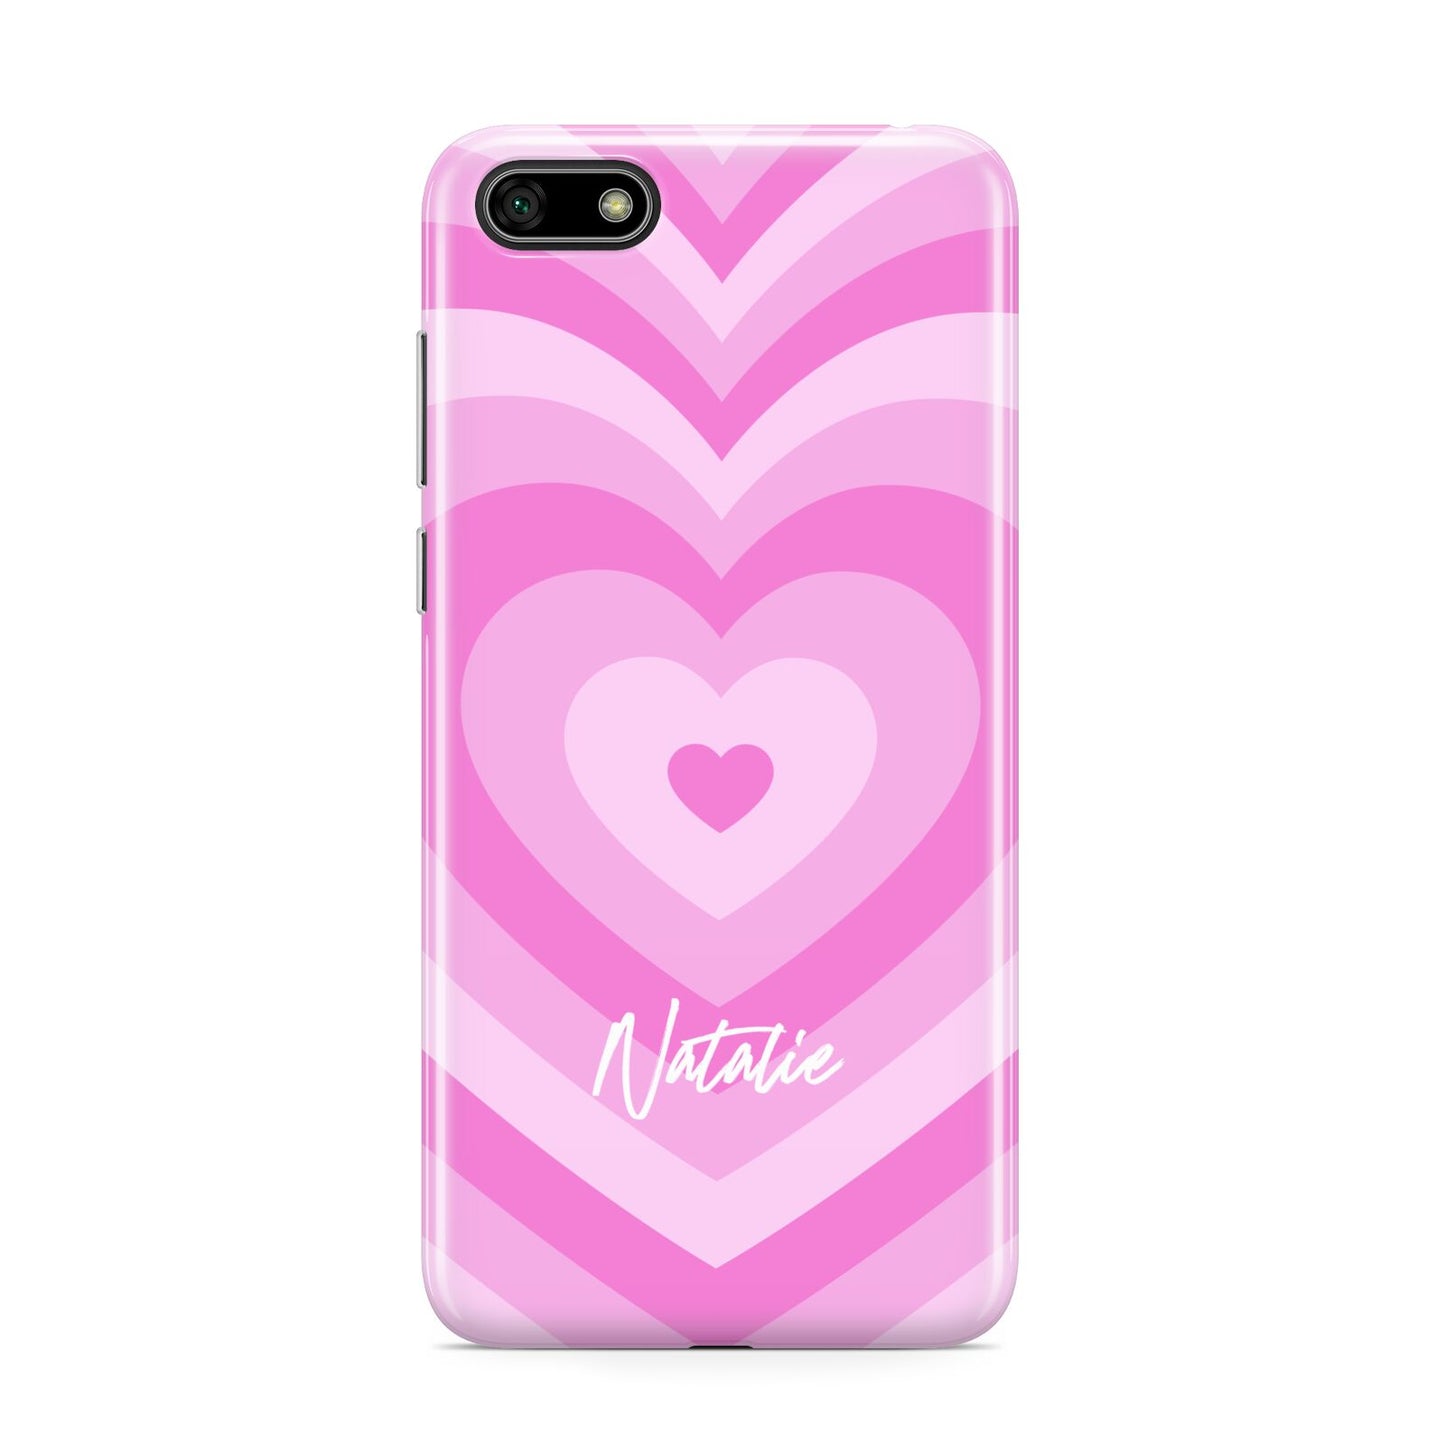 Personalised Pink Heart Huawei Y5 Prime 2018 Phone Case